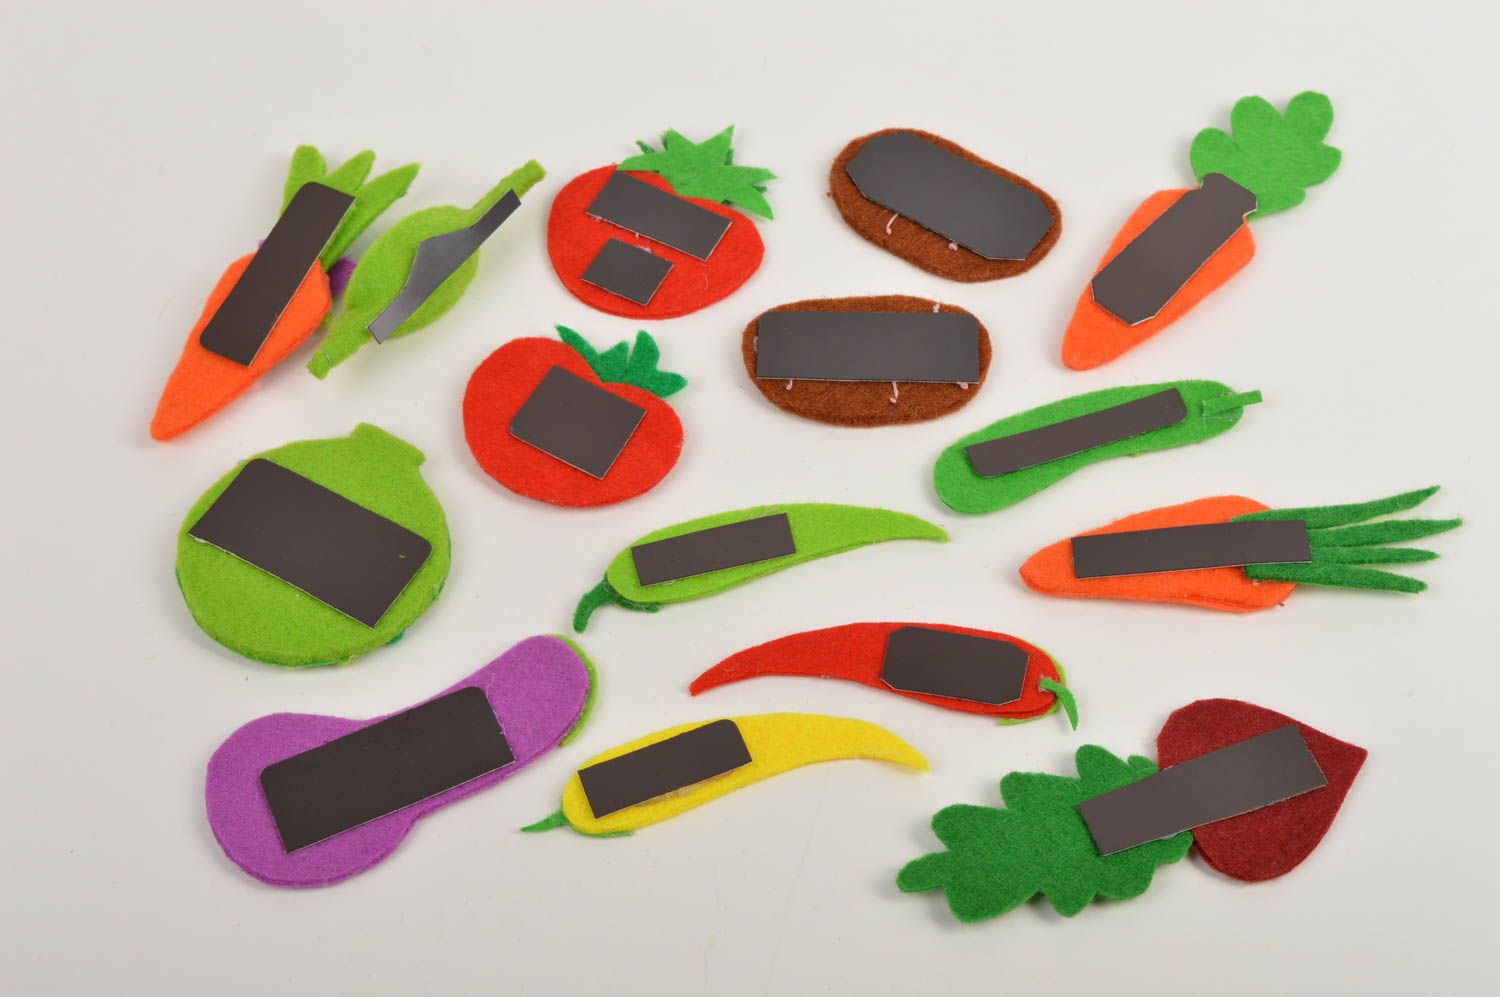 Магниты ручной работы магниты для детей фетровые игрушки в виде овощей 15 штук фото 4